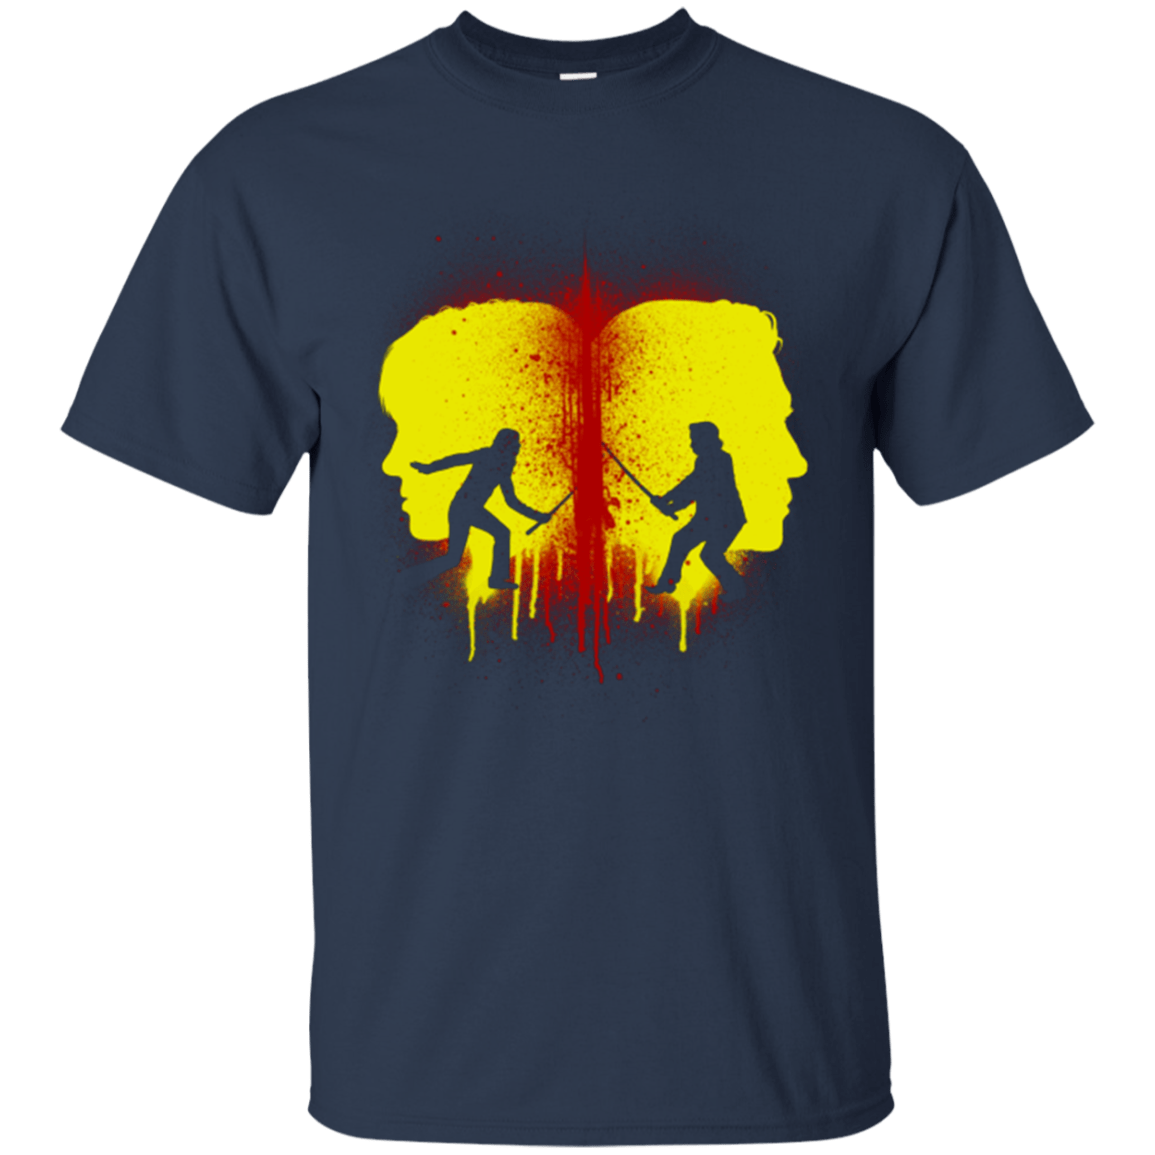 T-Shirts Navy / Small Kill Bill Silhouettes T-Shirt